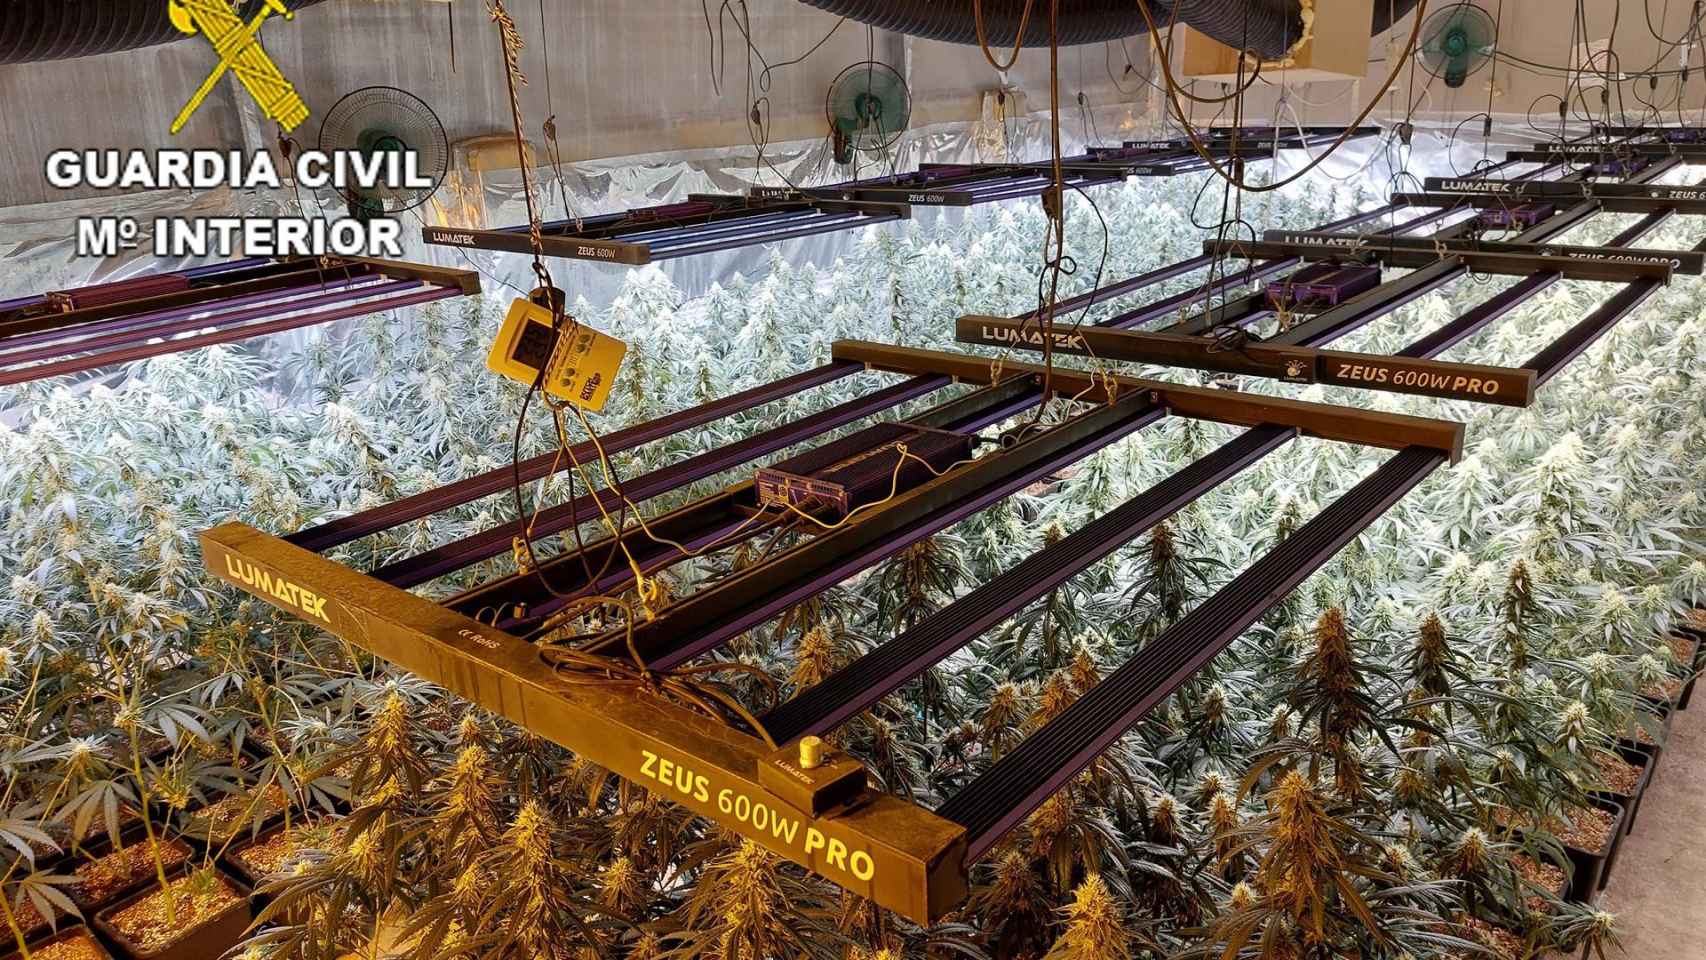 Plantación de marihuana hallada por la Guardia Civil en Alcabón (Toledo). Foto: Guardia Civil